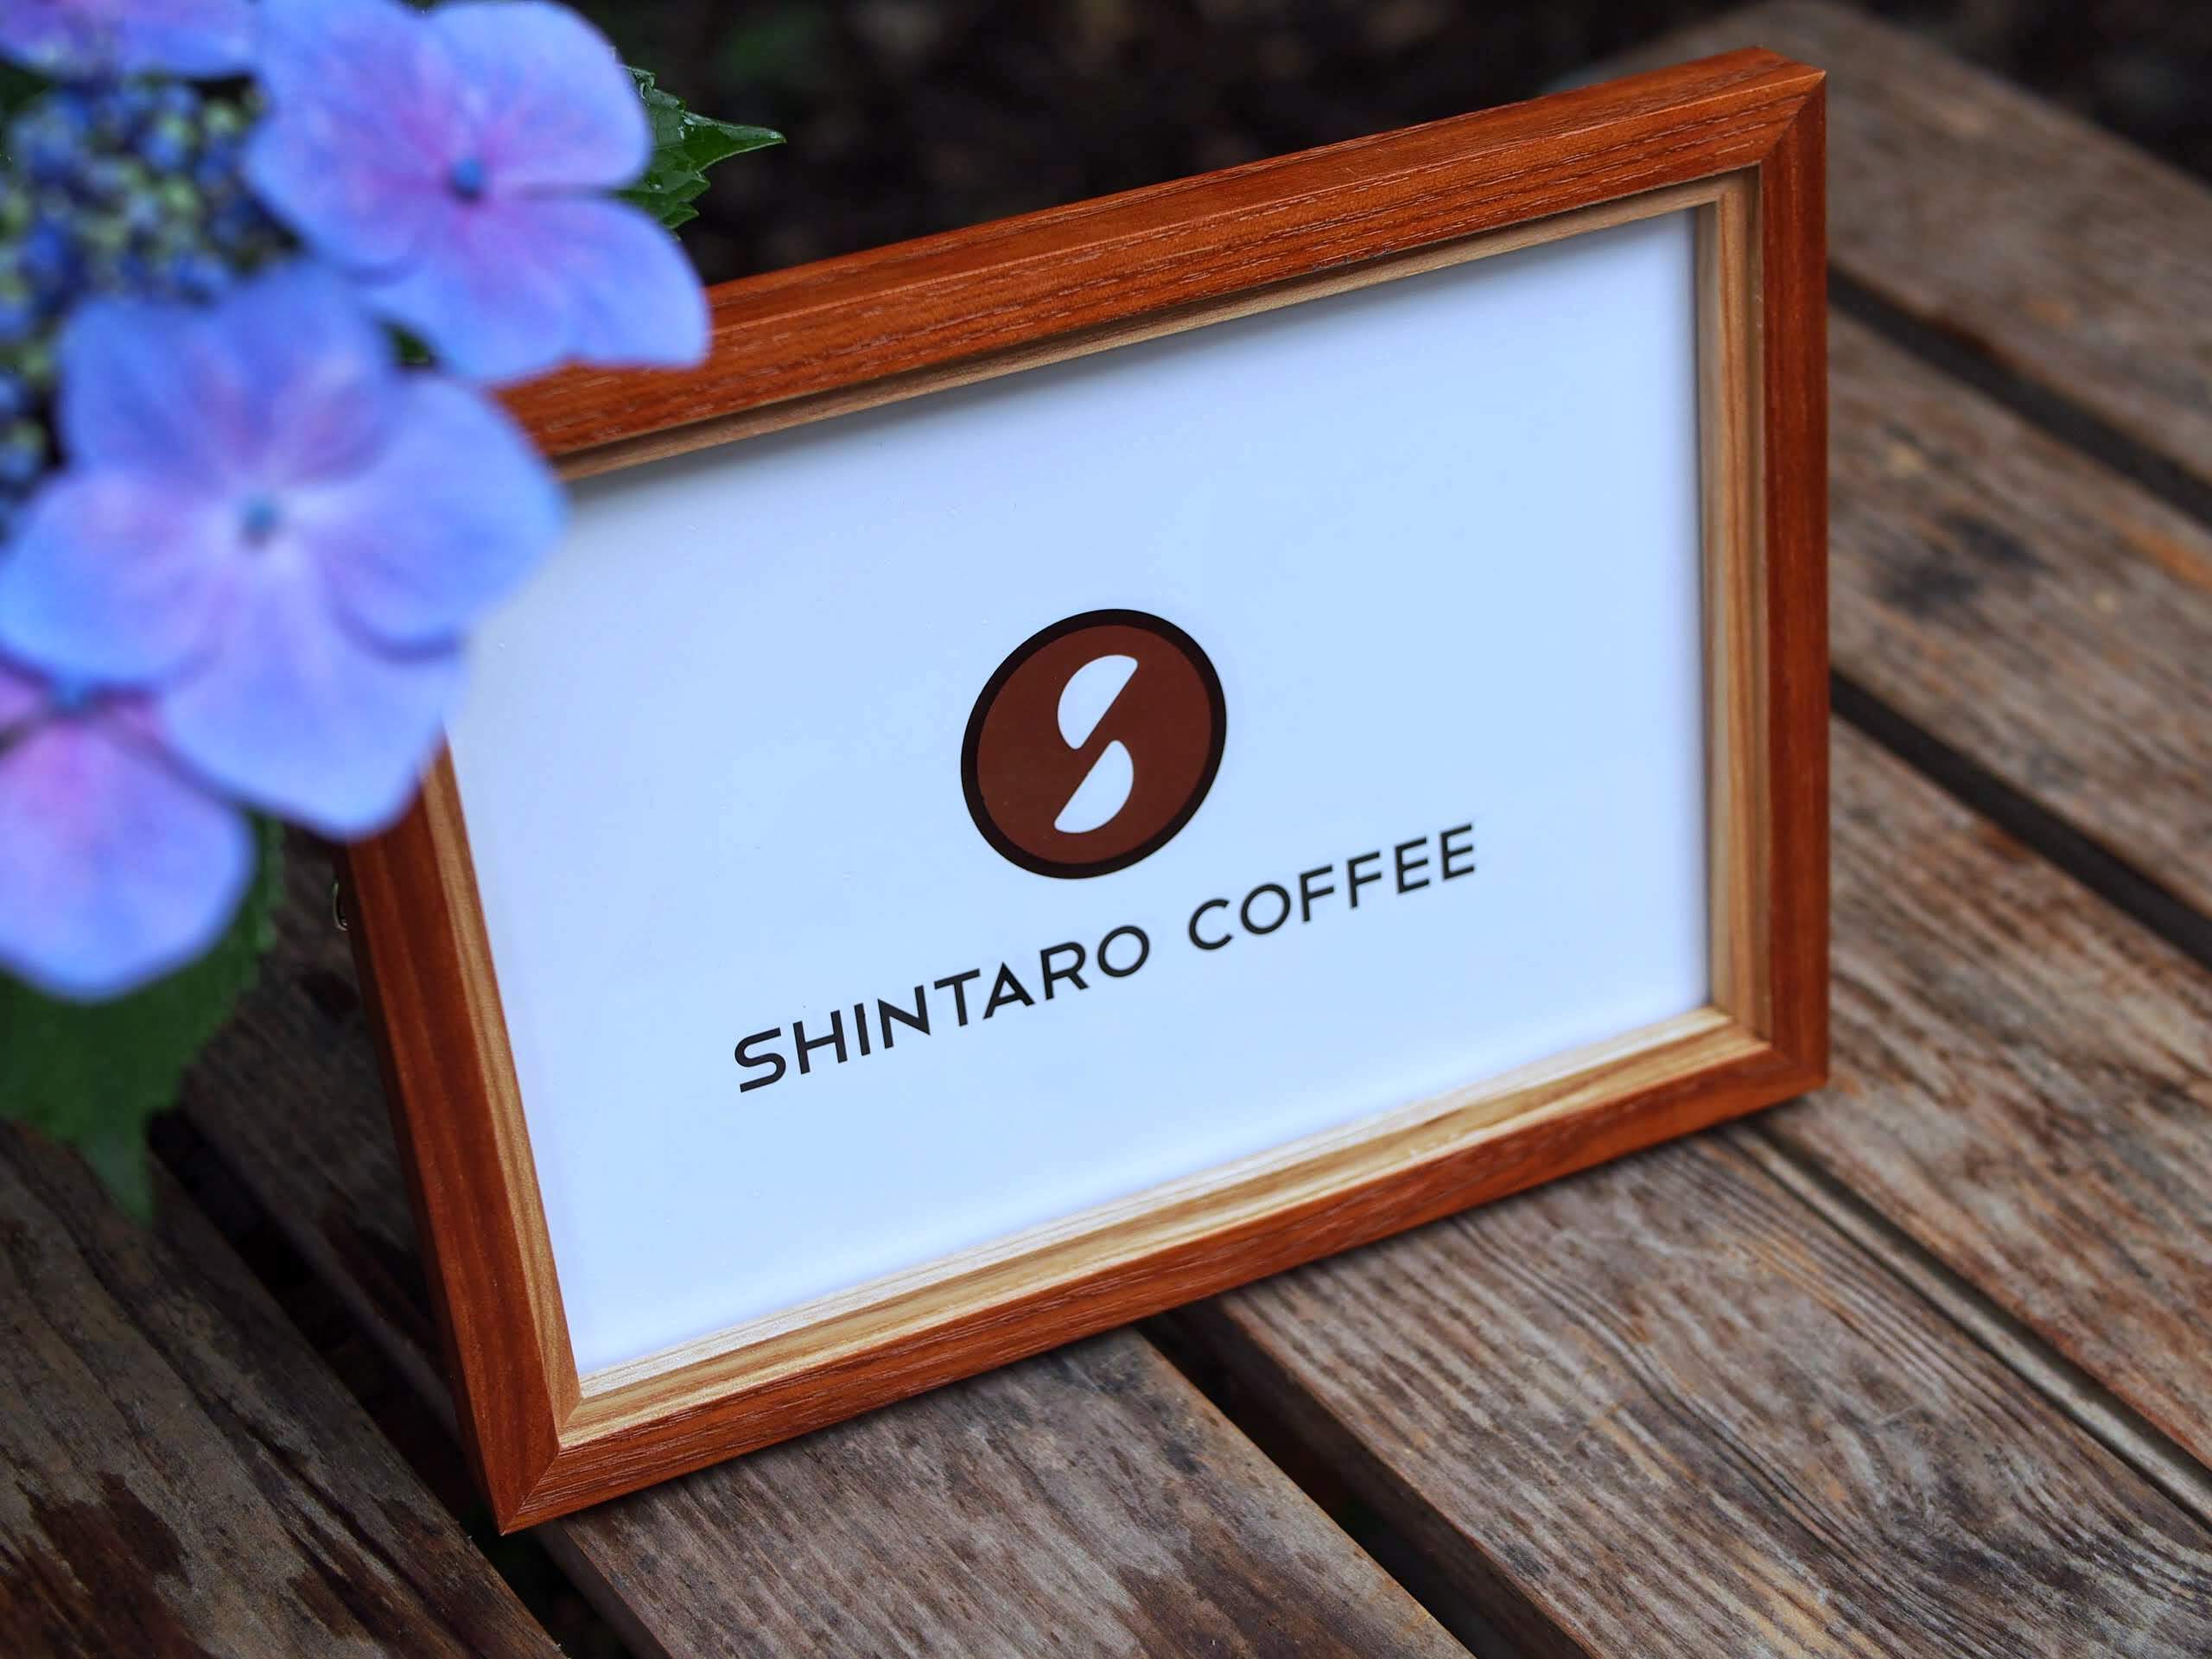 SHINTARO COFFEE